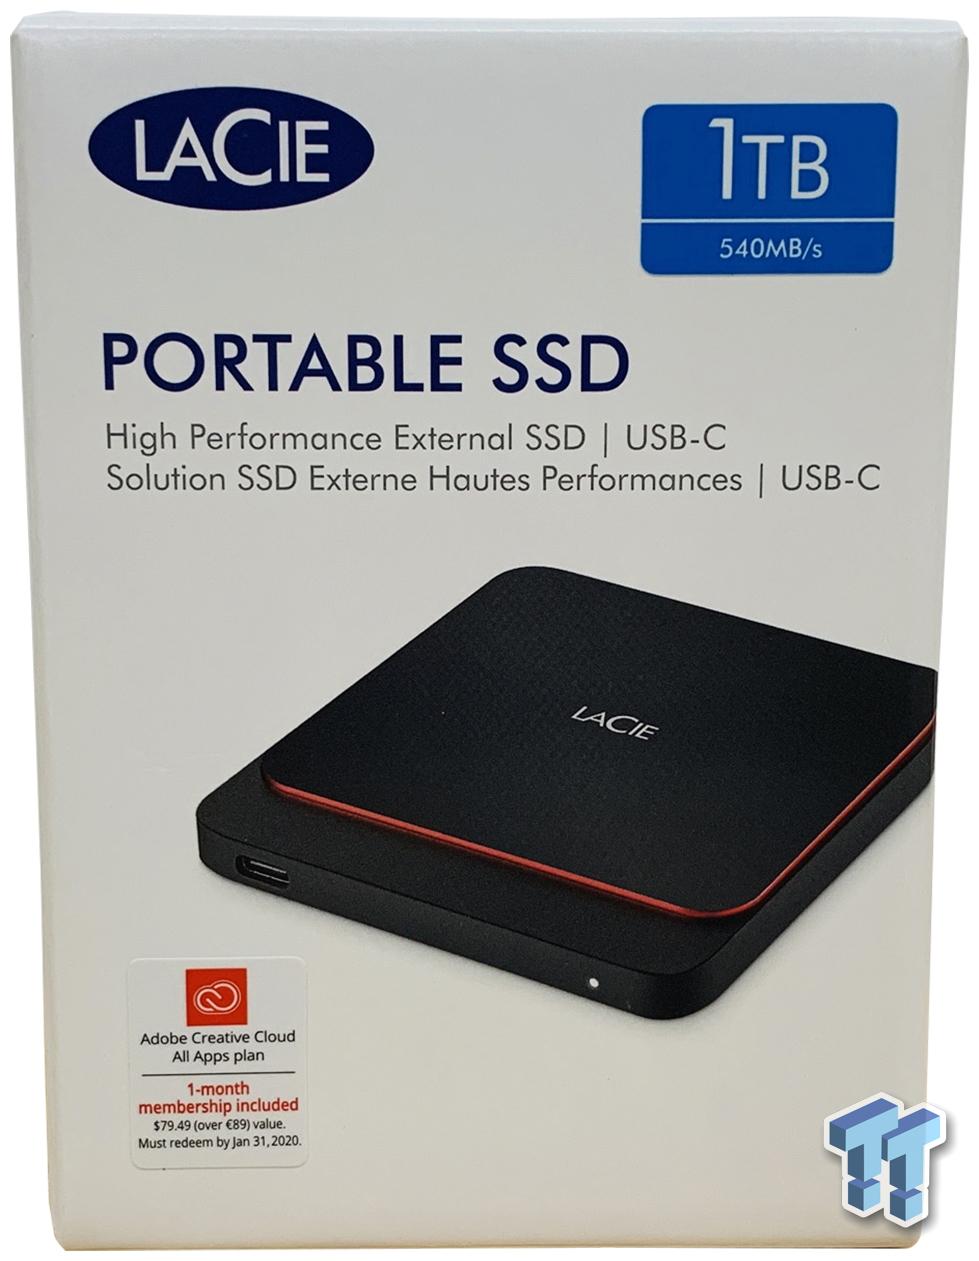 tag udvikling af højde LaCie Portable SSD 1TB Review